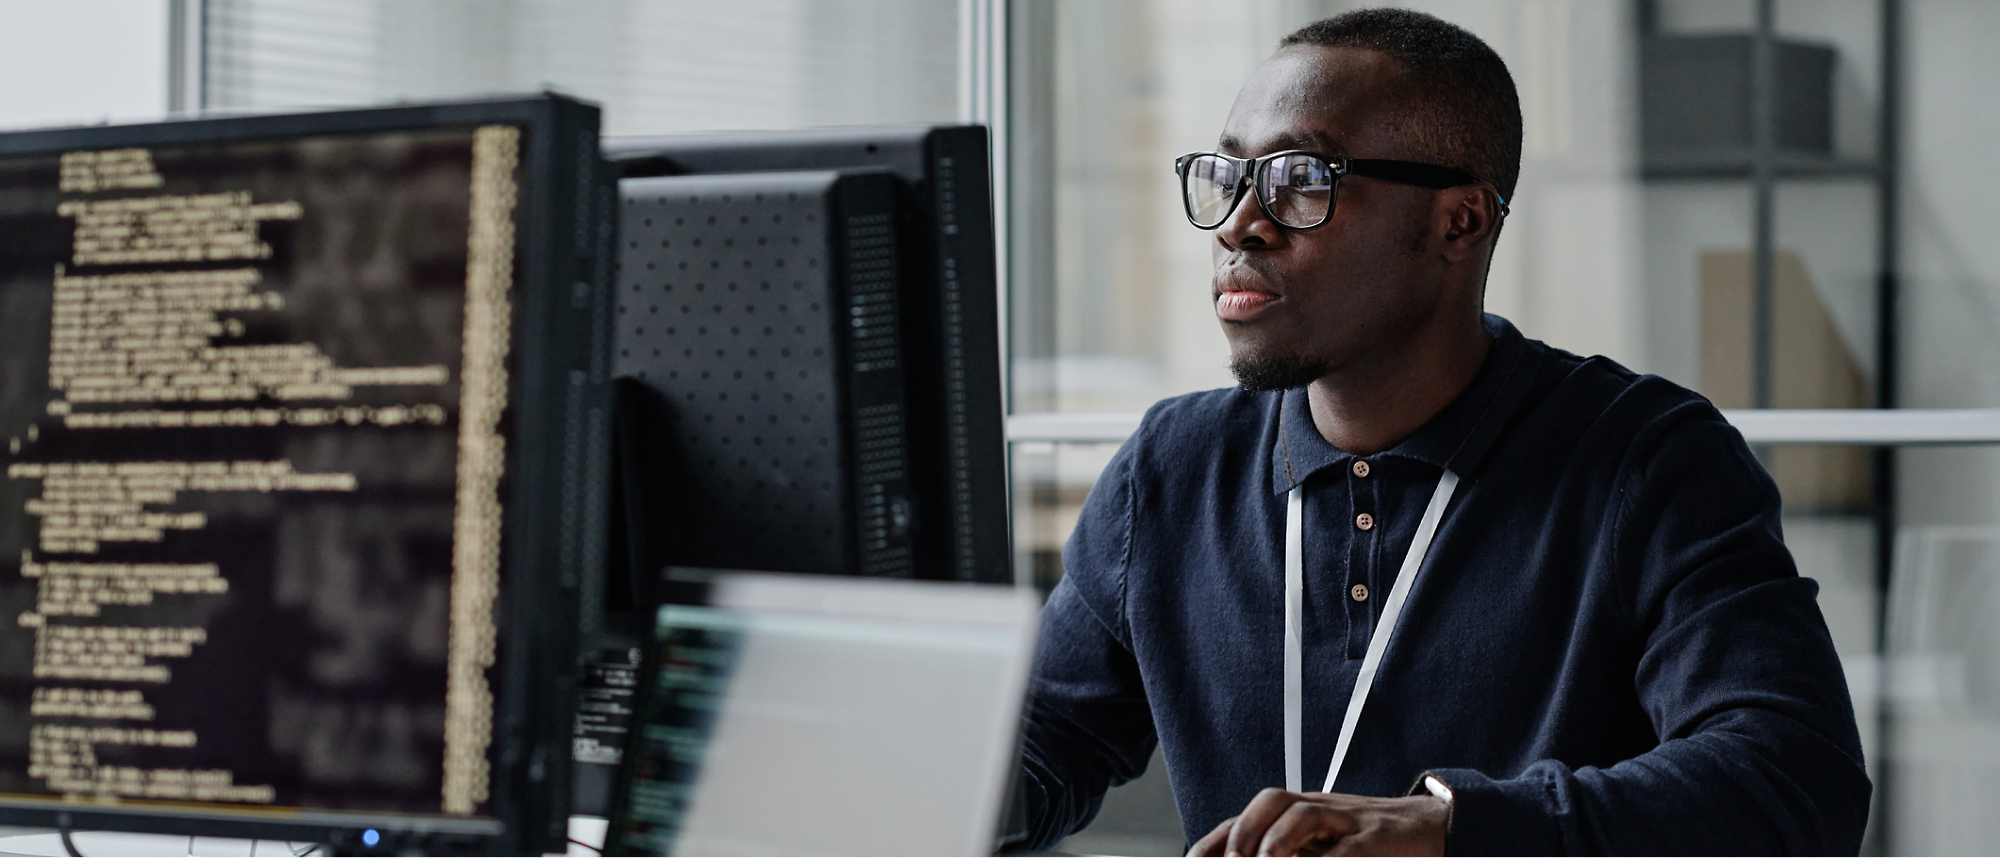 Um homem de óculos e camisa escura trabalha num computador com linhas de código no ecrã, num ambiente de escritório.